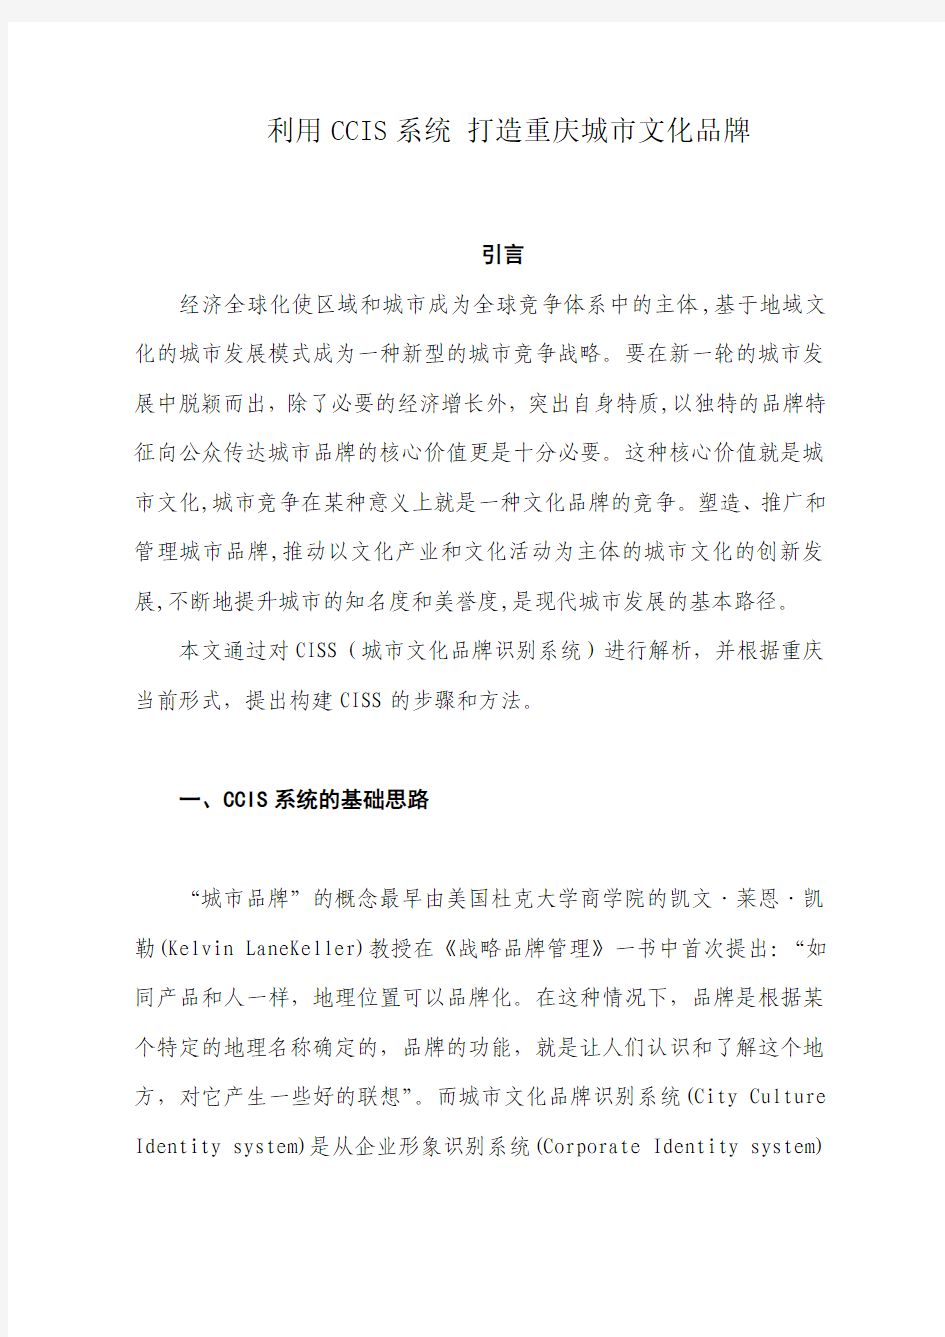 利用CCIS系统 打造重庆城市文化品牌 程枫凯